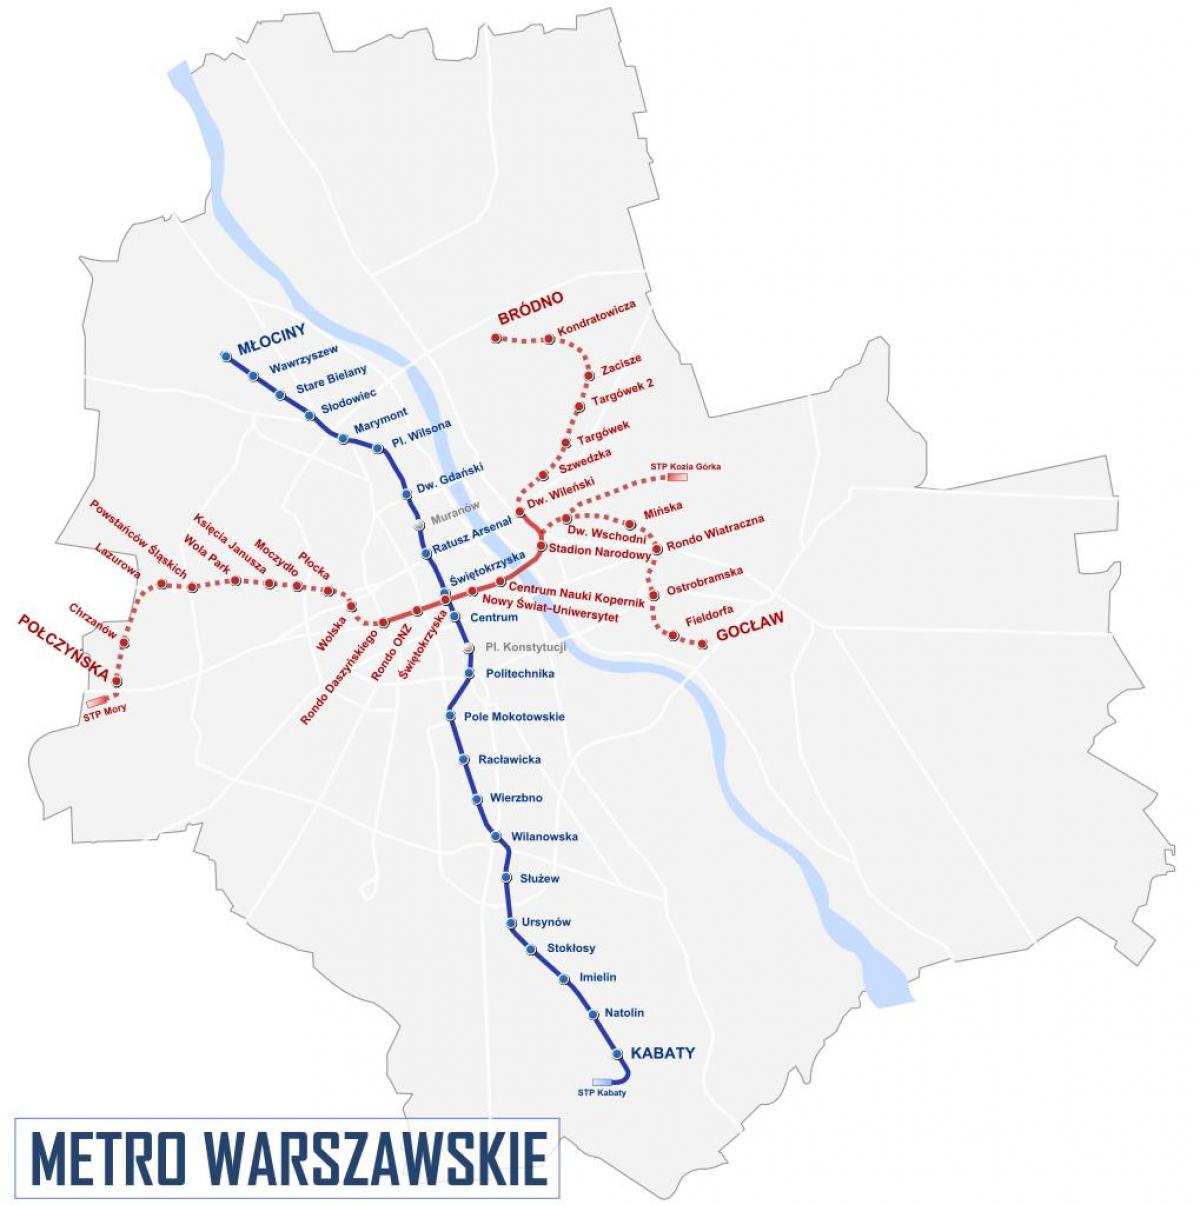 Mapa de Varsóvia metro de 2016